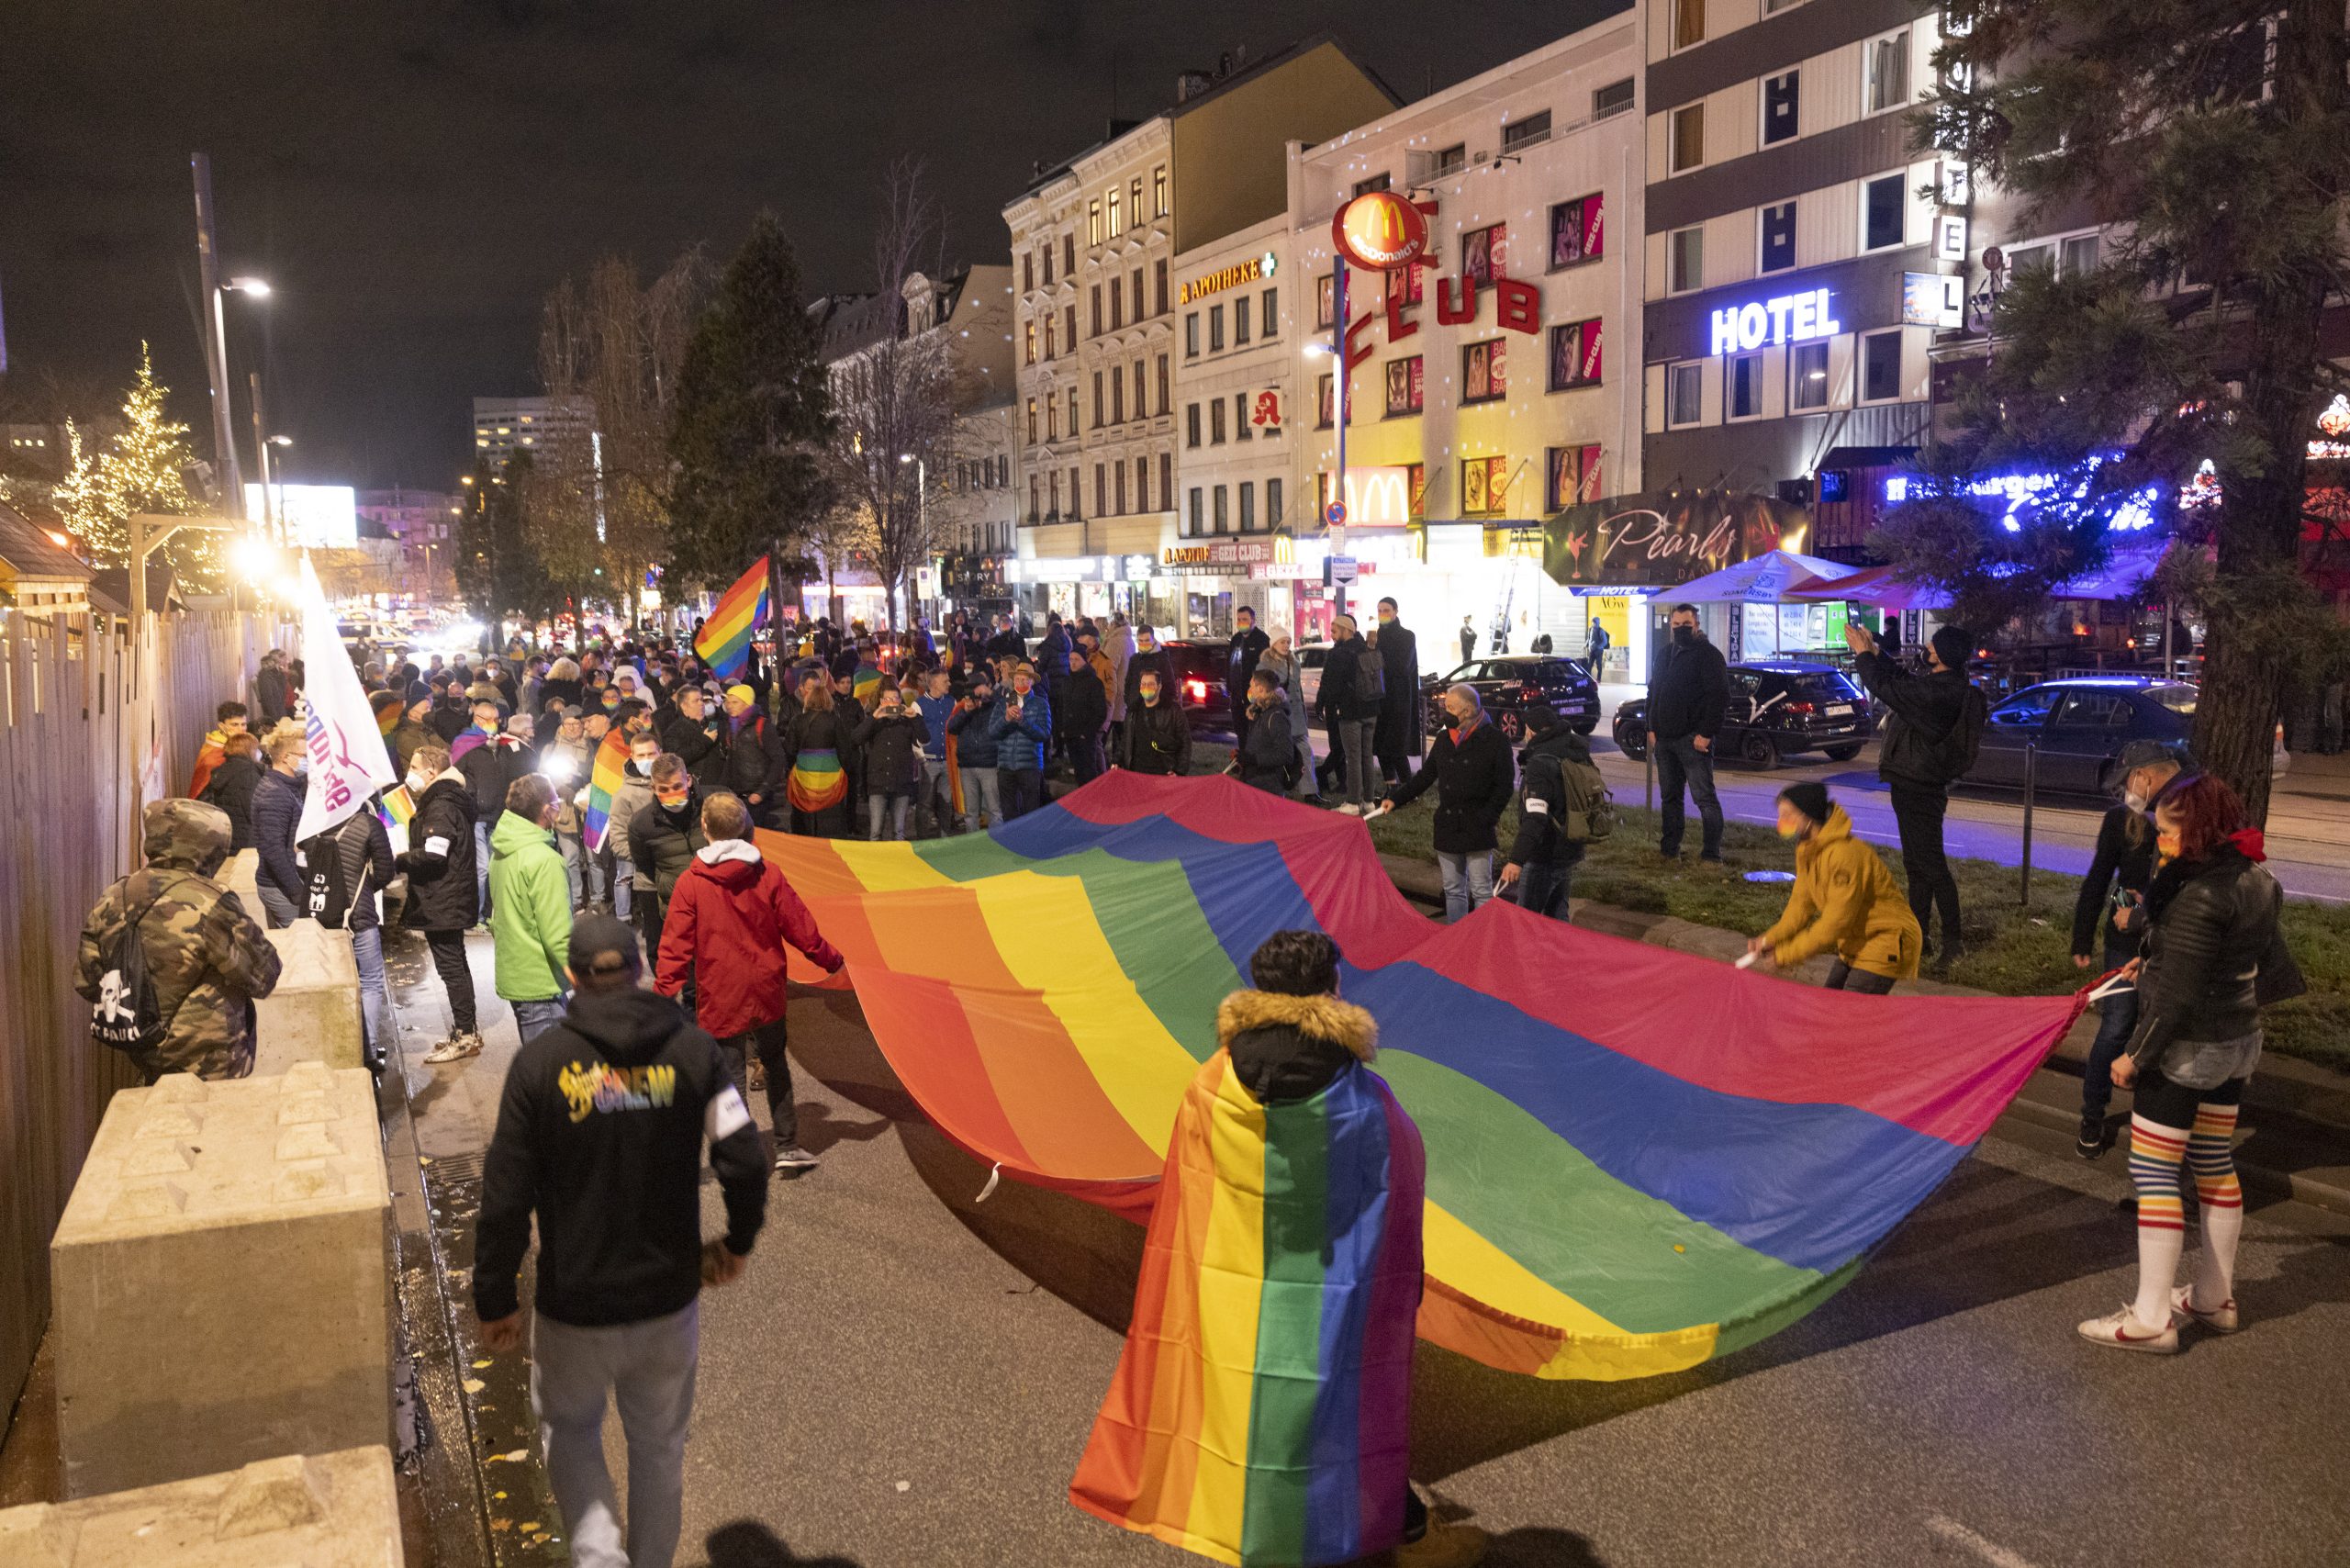 Menschen stehen mit einer großen Regenbogenflagge in der Hand auf einer Demo